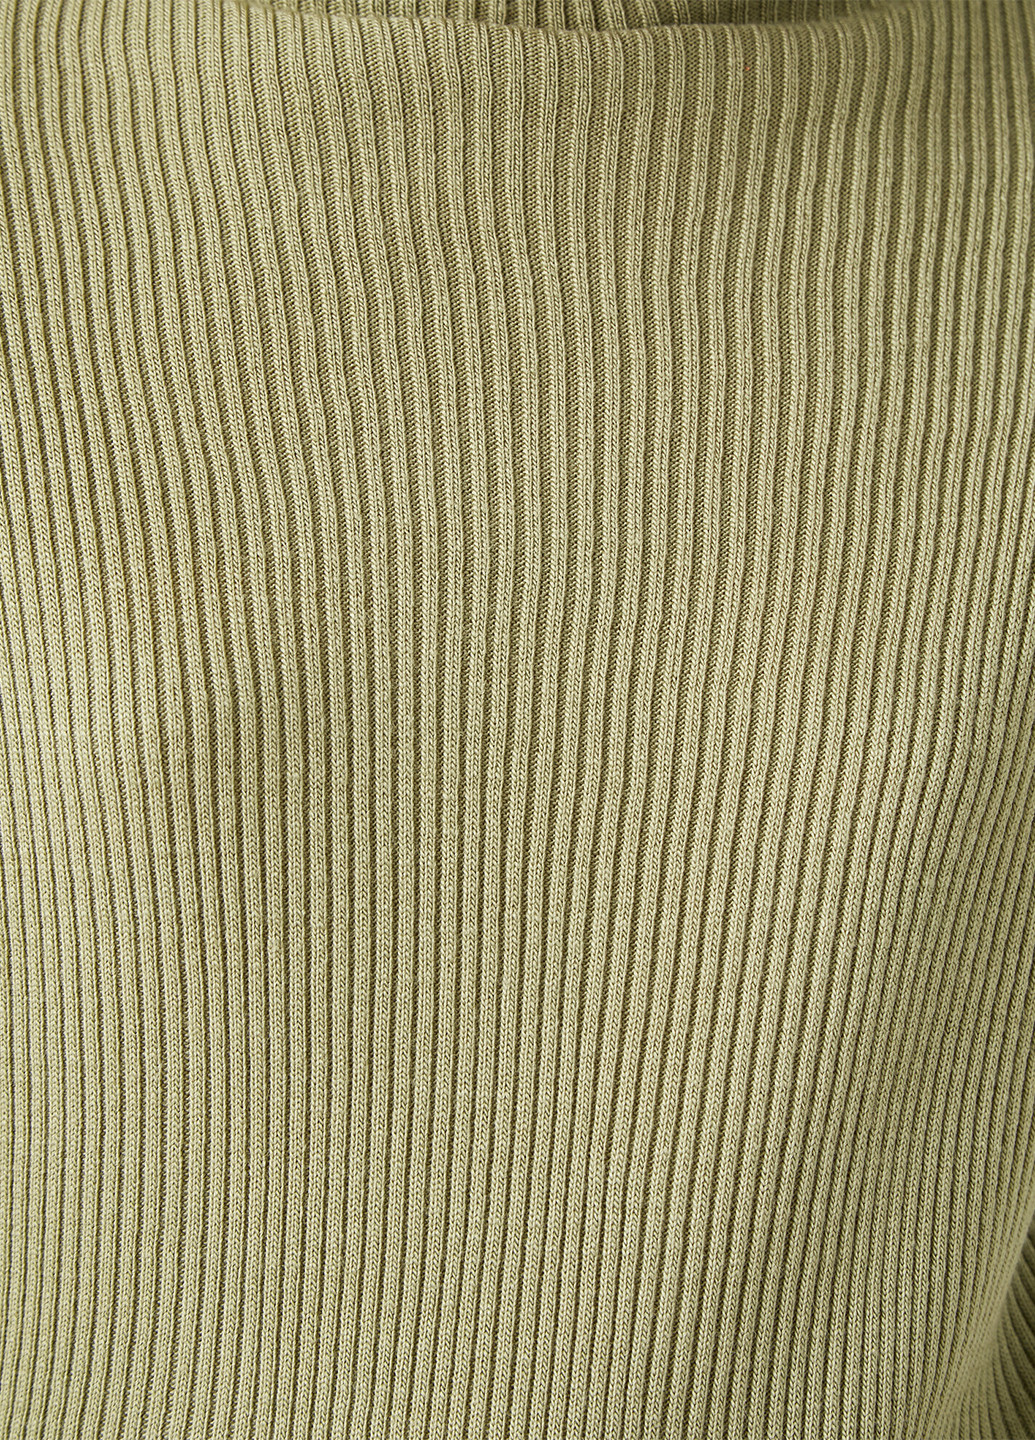 Светло-зеленый демисезонный свитер KOTON